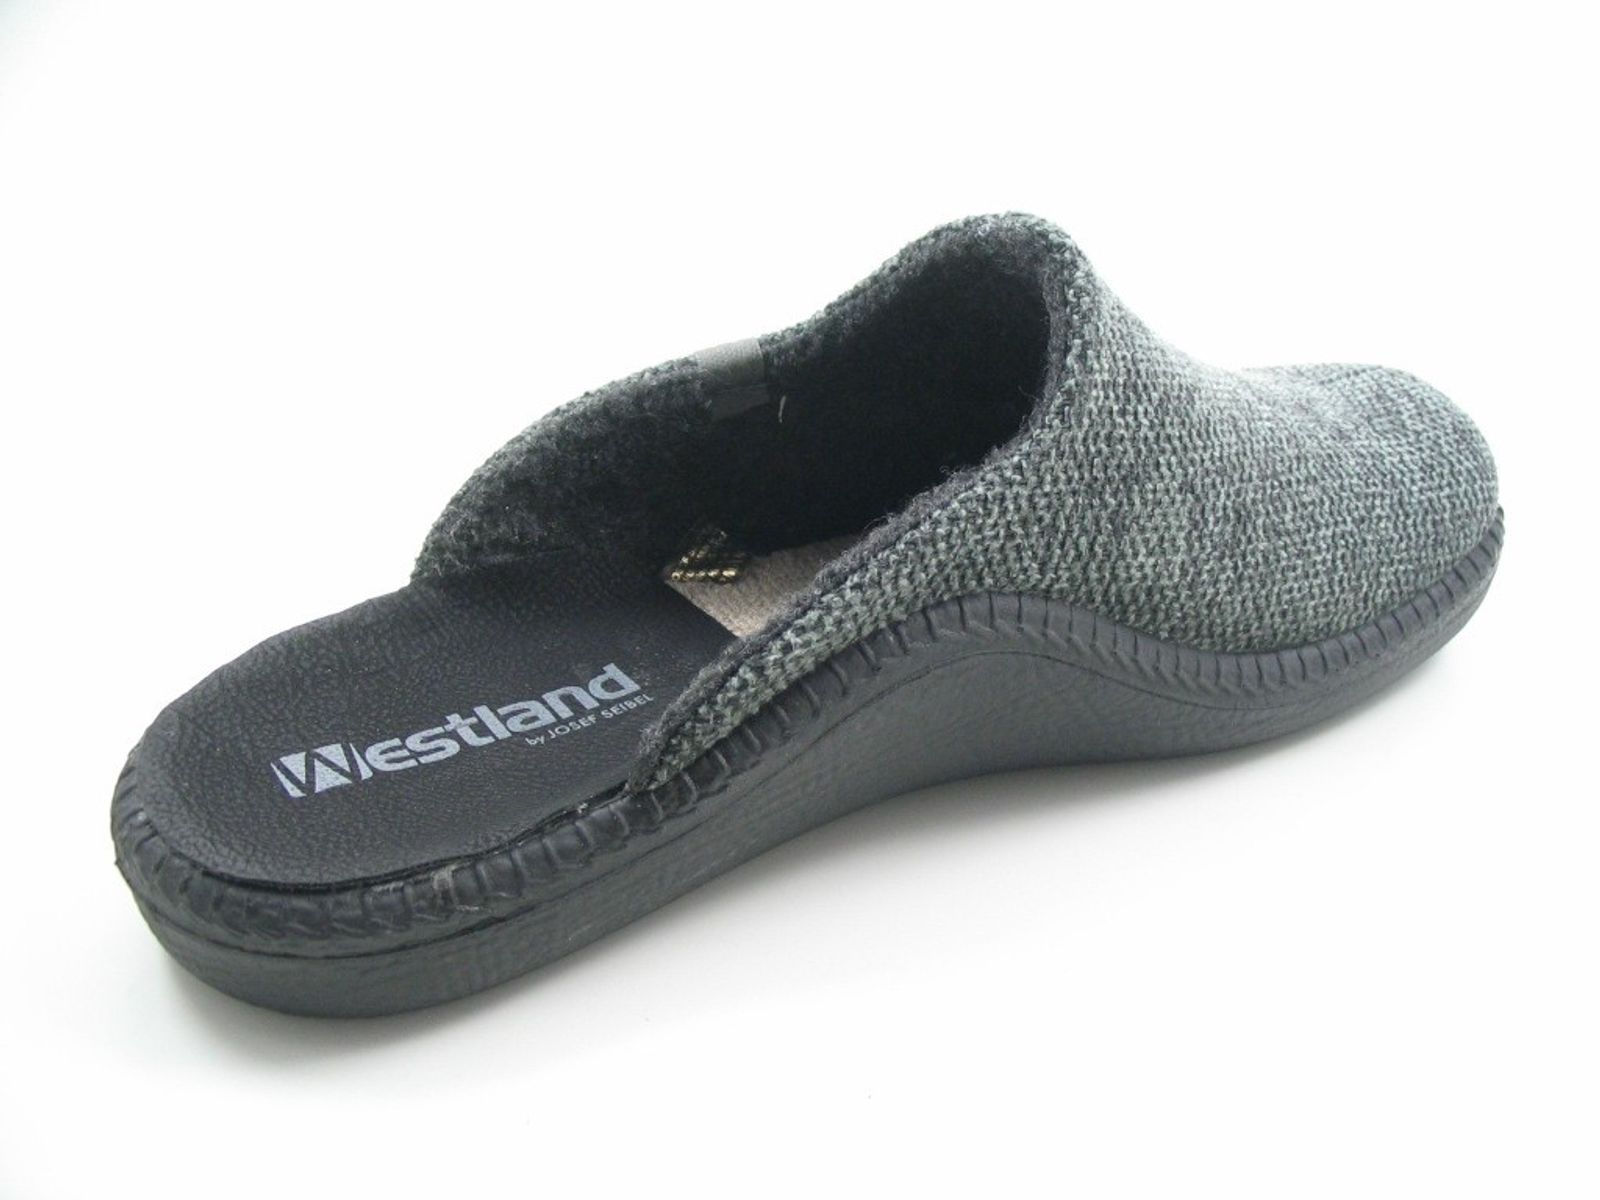 Schuh von Westland, 44